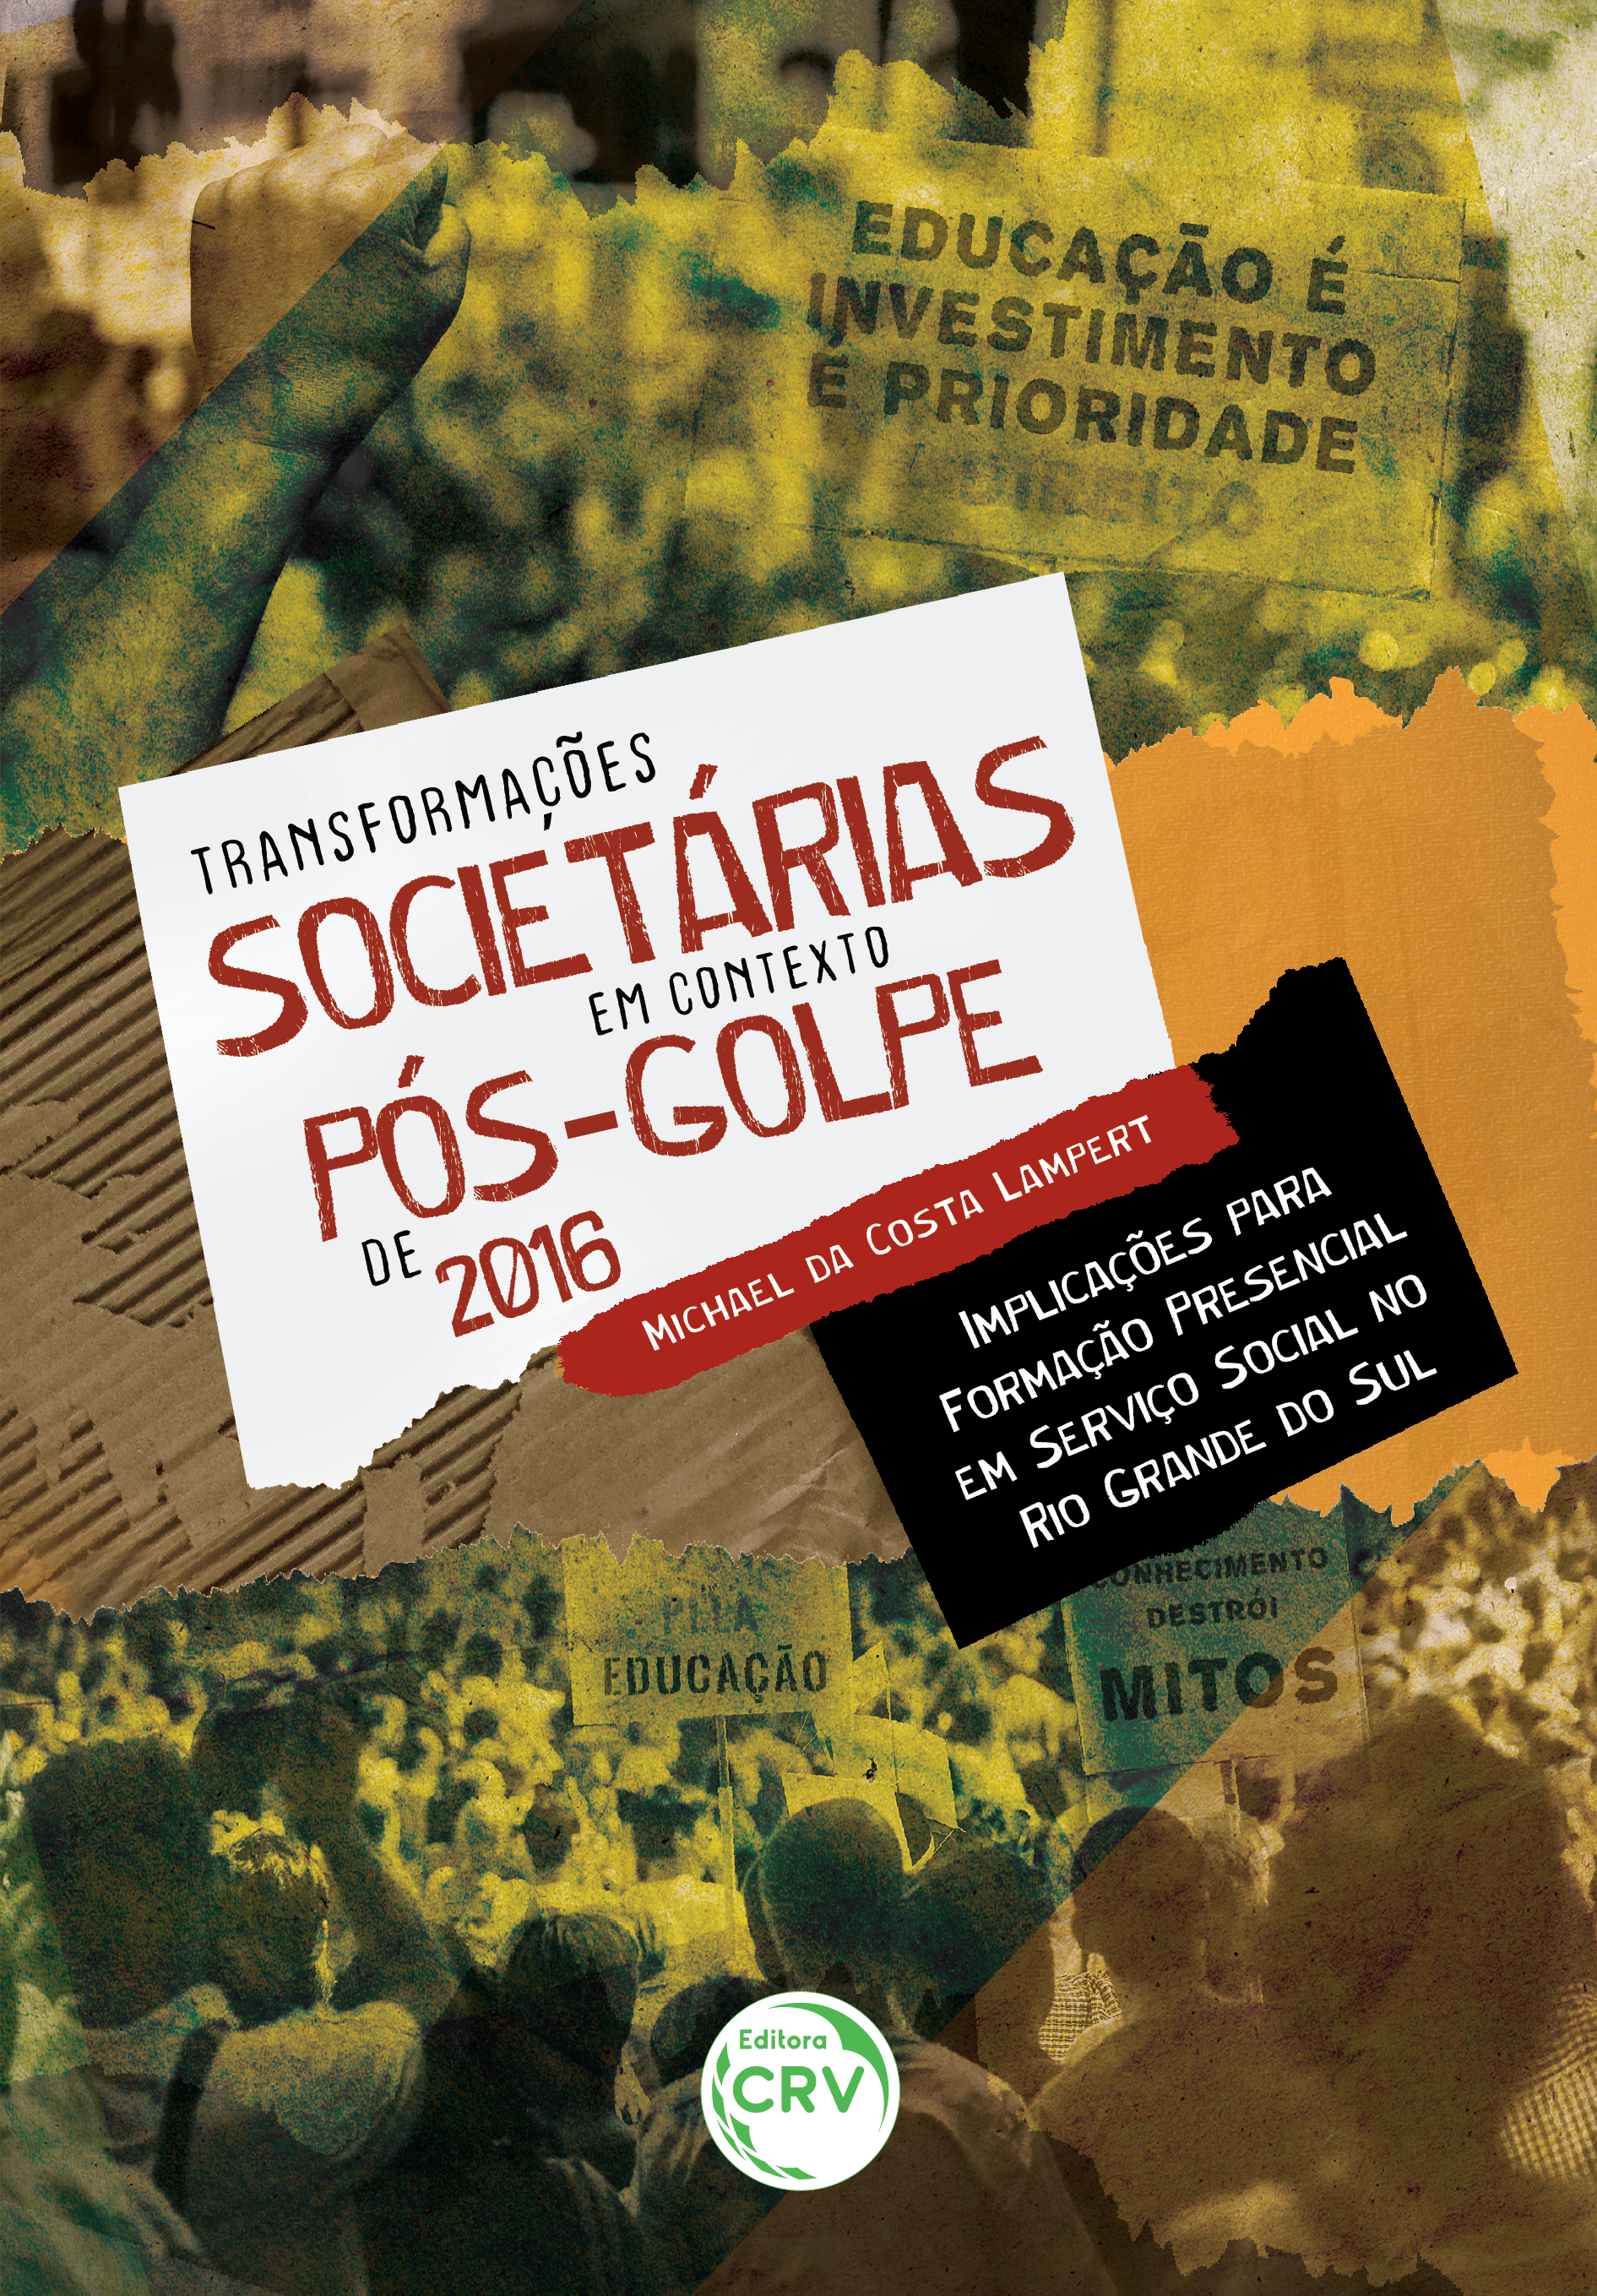 Capa do livro: TRANSFORMAÇÕES SOCIETÁRIAS EM CONTEXTO PÓS-GOLPE DE 2016: <br>implicações para formação presencial em serviço social no Rio Grande do Sul